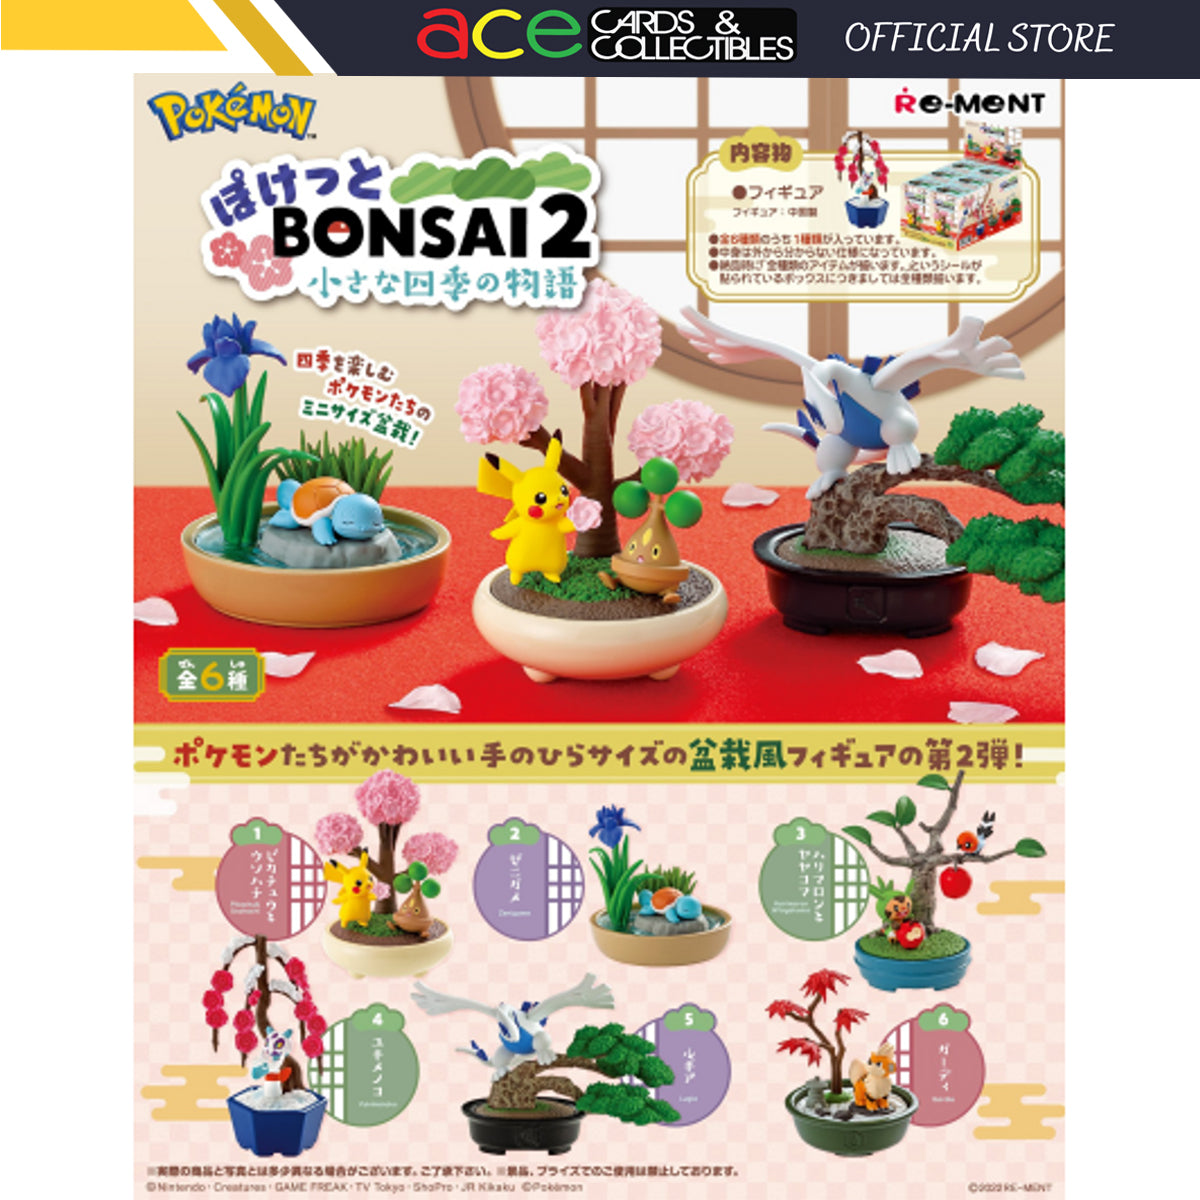 Re-Ment Pokemon Pocket Bonsai 2-Single Box (Random)-Re-Ment-Ace Cards & Collectibles